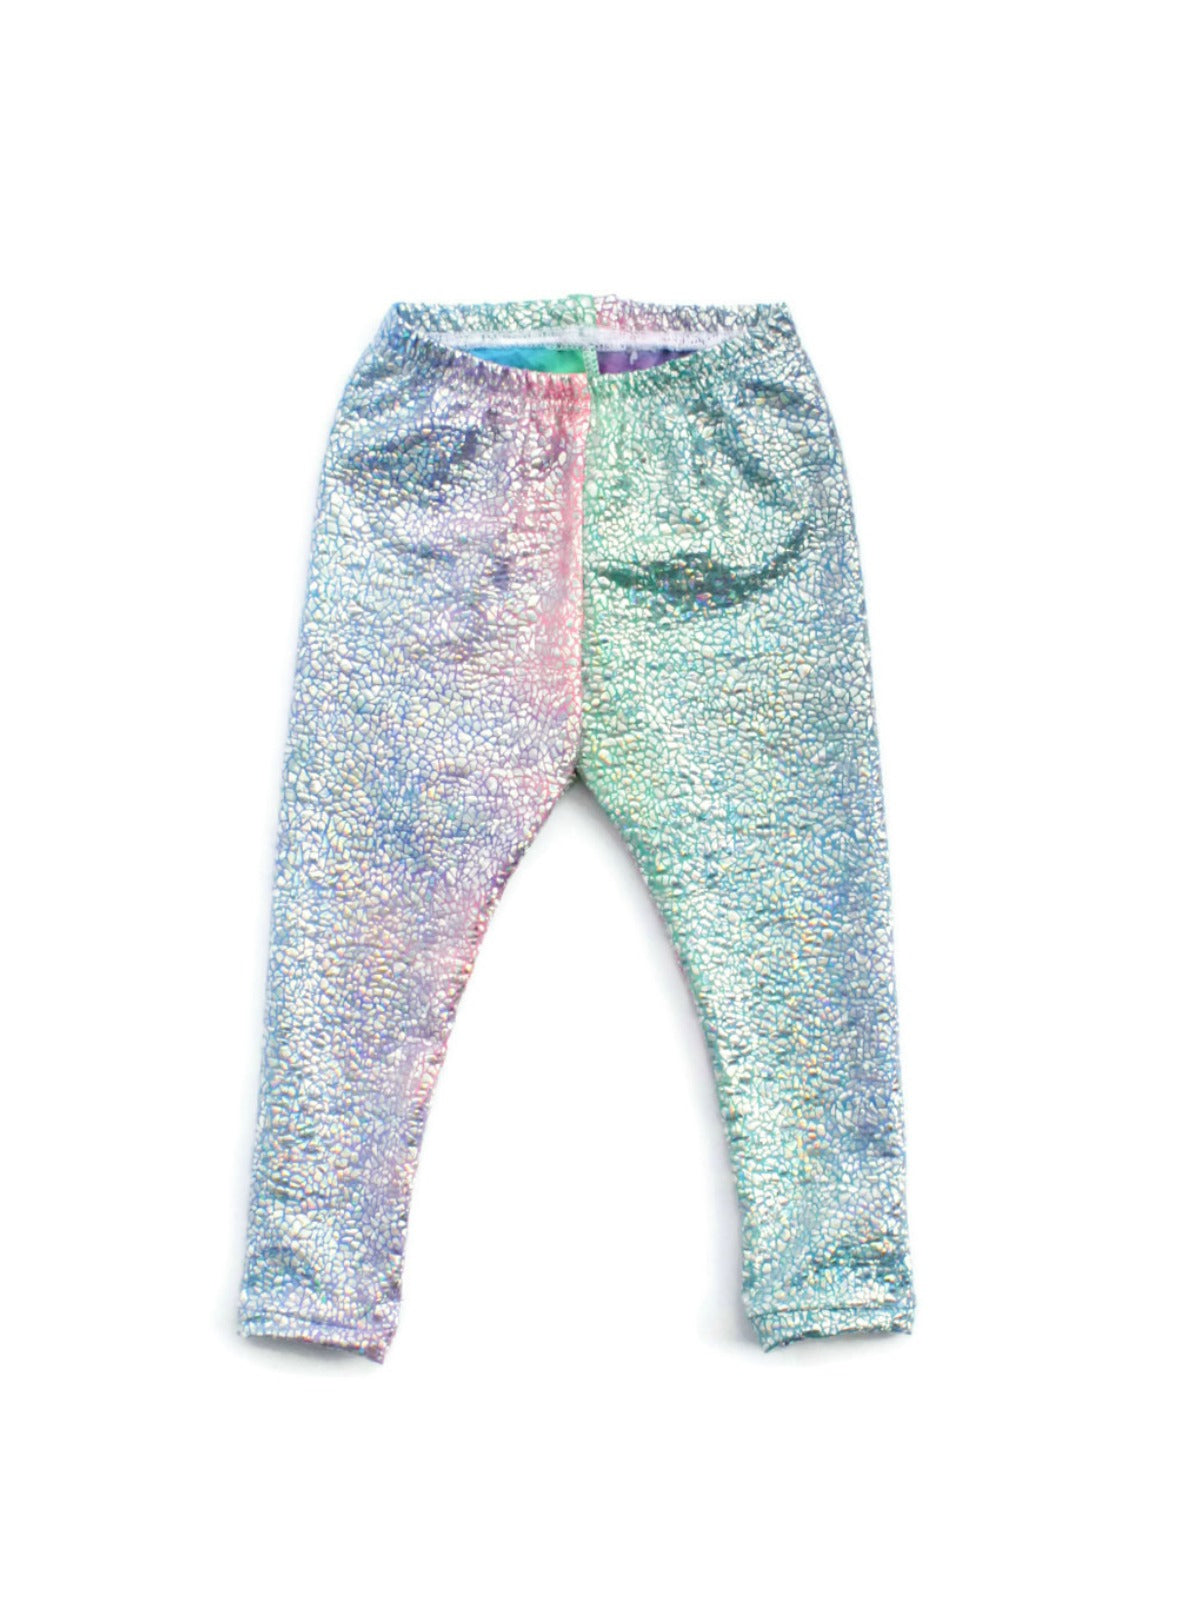 Children's Holograph Rainbow Leggings, Girls Sparkle Pants, Child Unicorn  Leggings, 